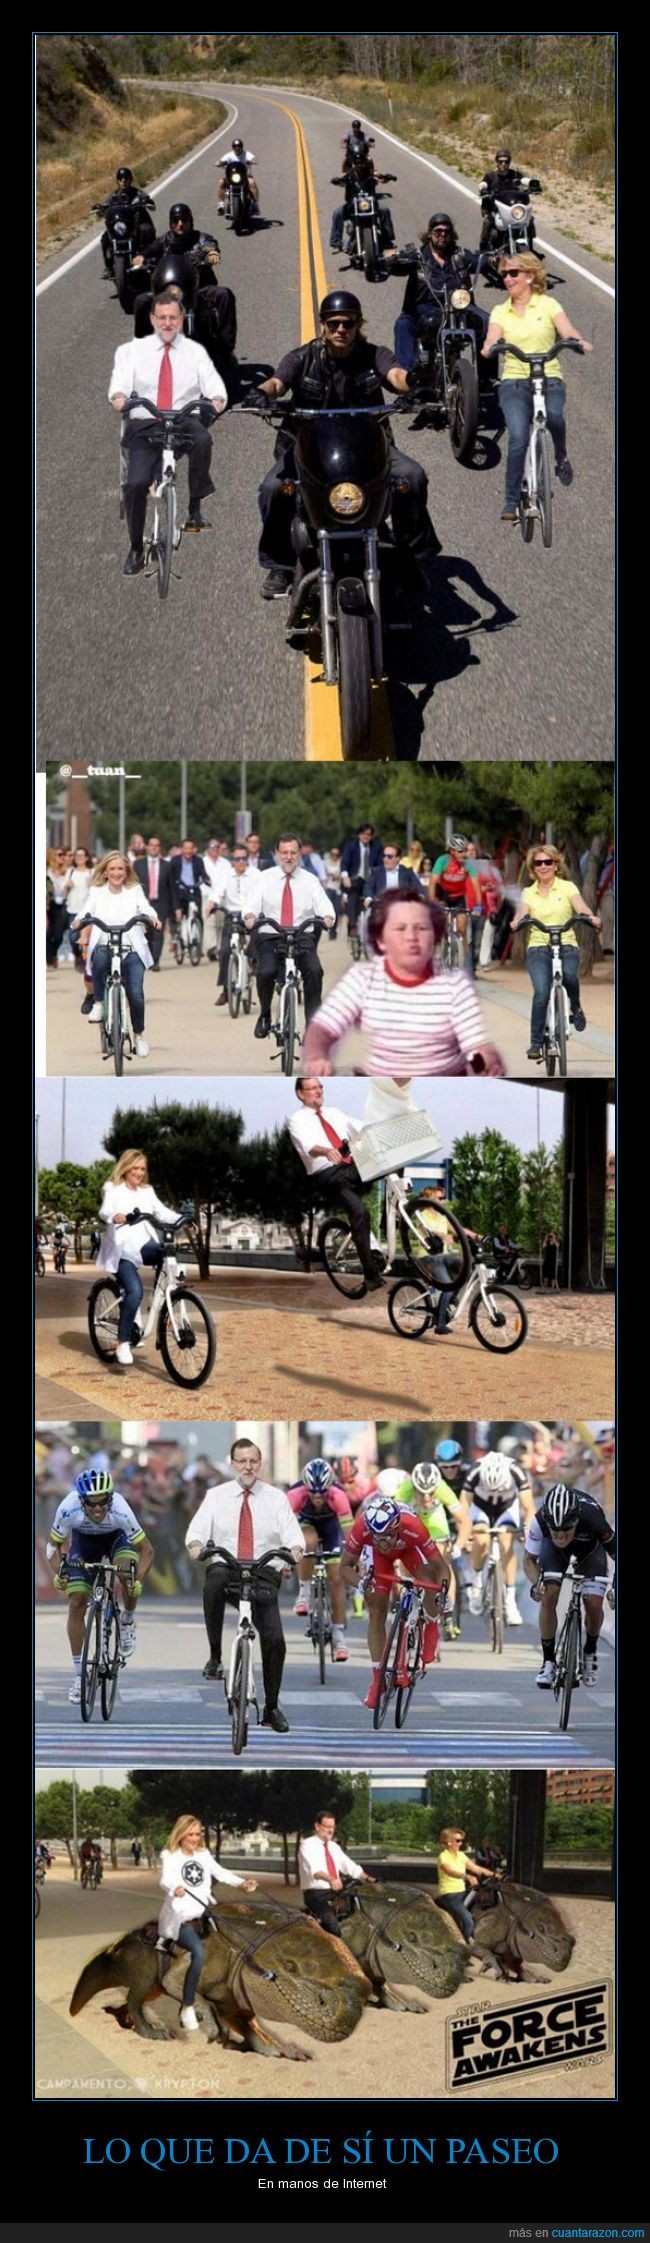 Mariano Rajoy,paseo,bici,bicileta,esperanza aguirre,cifuentes,Star Wars,Chanquete,piraña,indurain,verano azul,vuelta ciclista,chop,sons of anarchy